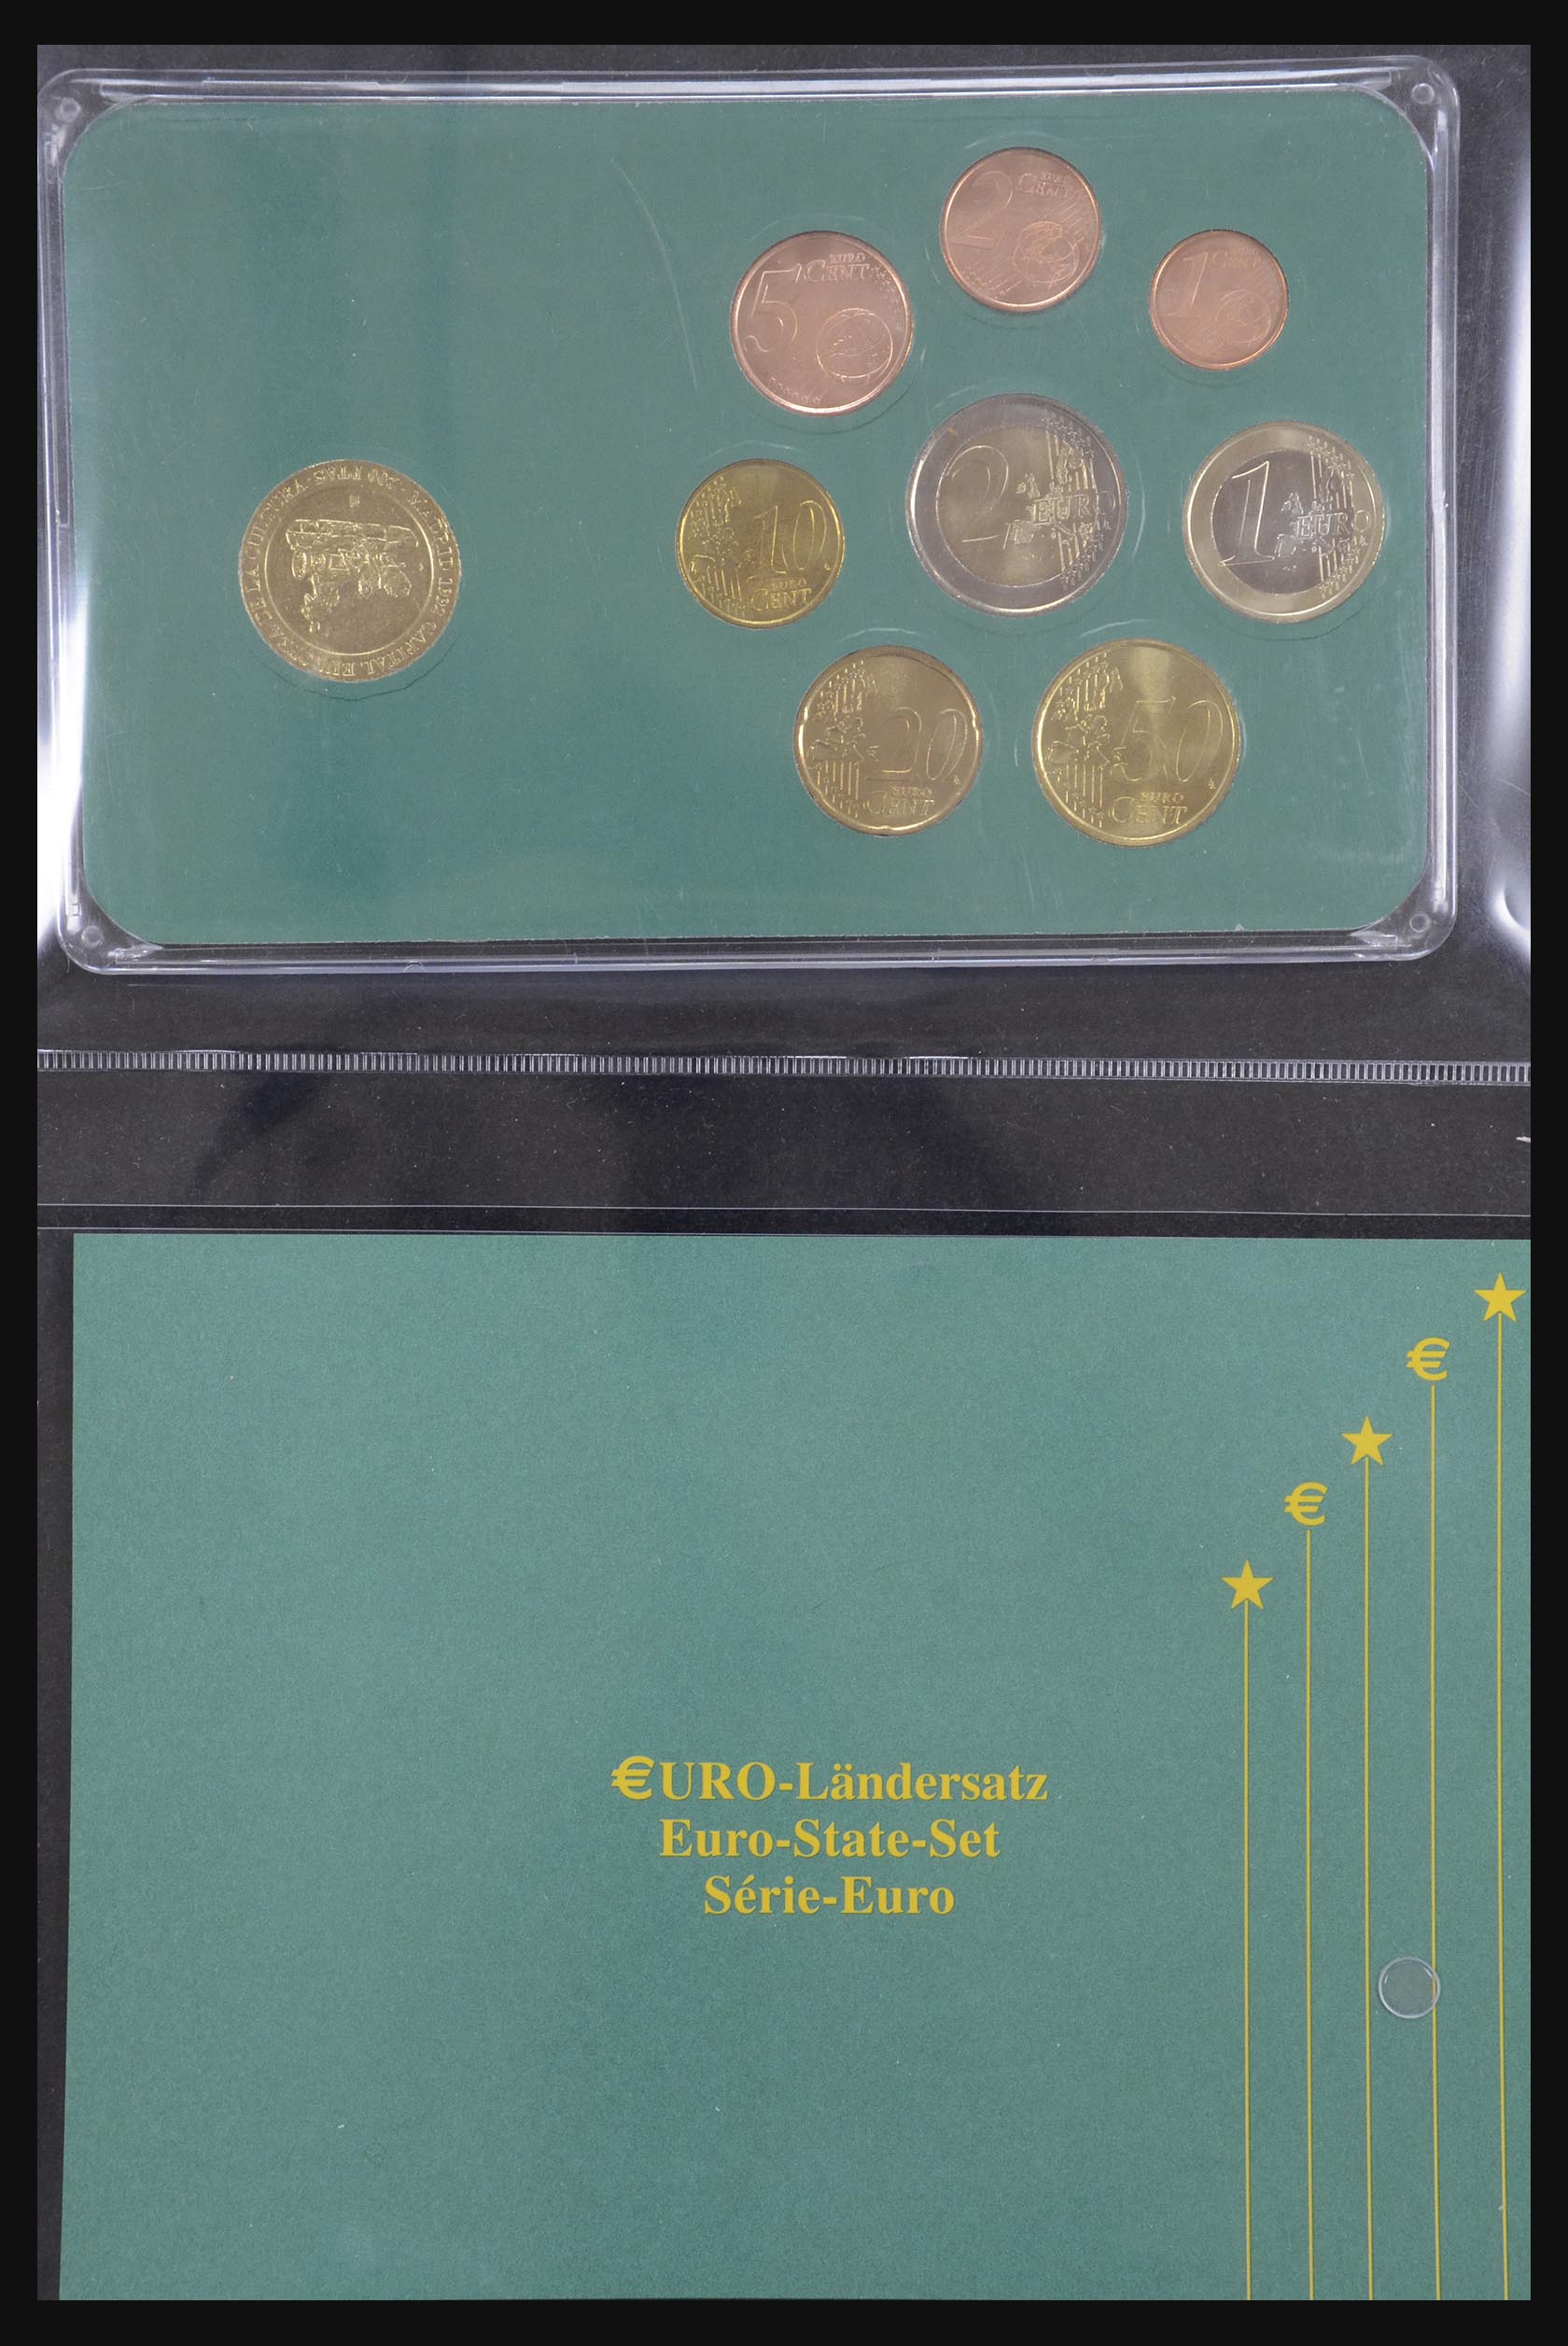 32149 003 - 32149 European countries eurocoins 2003.